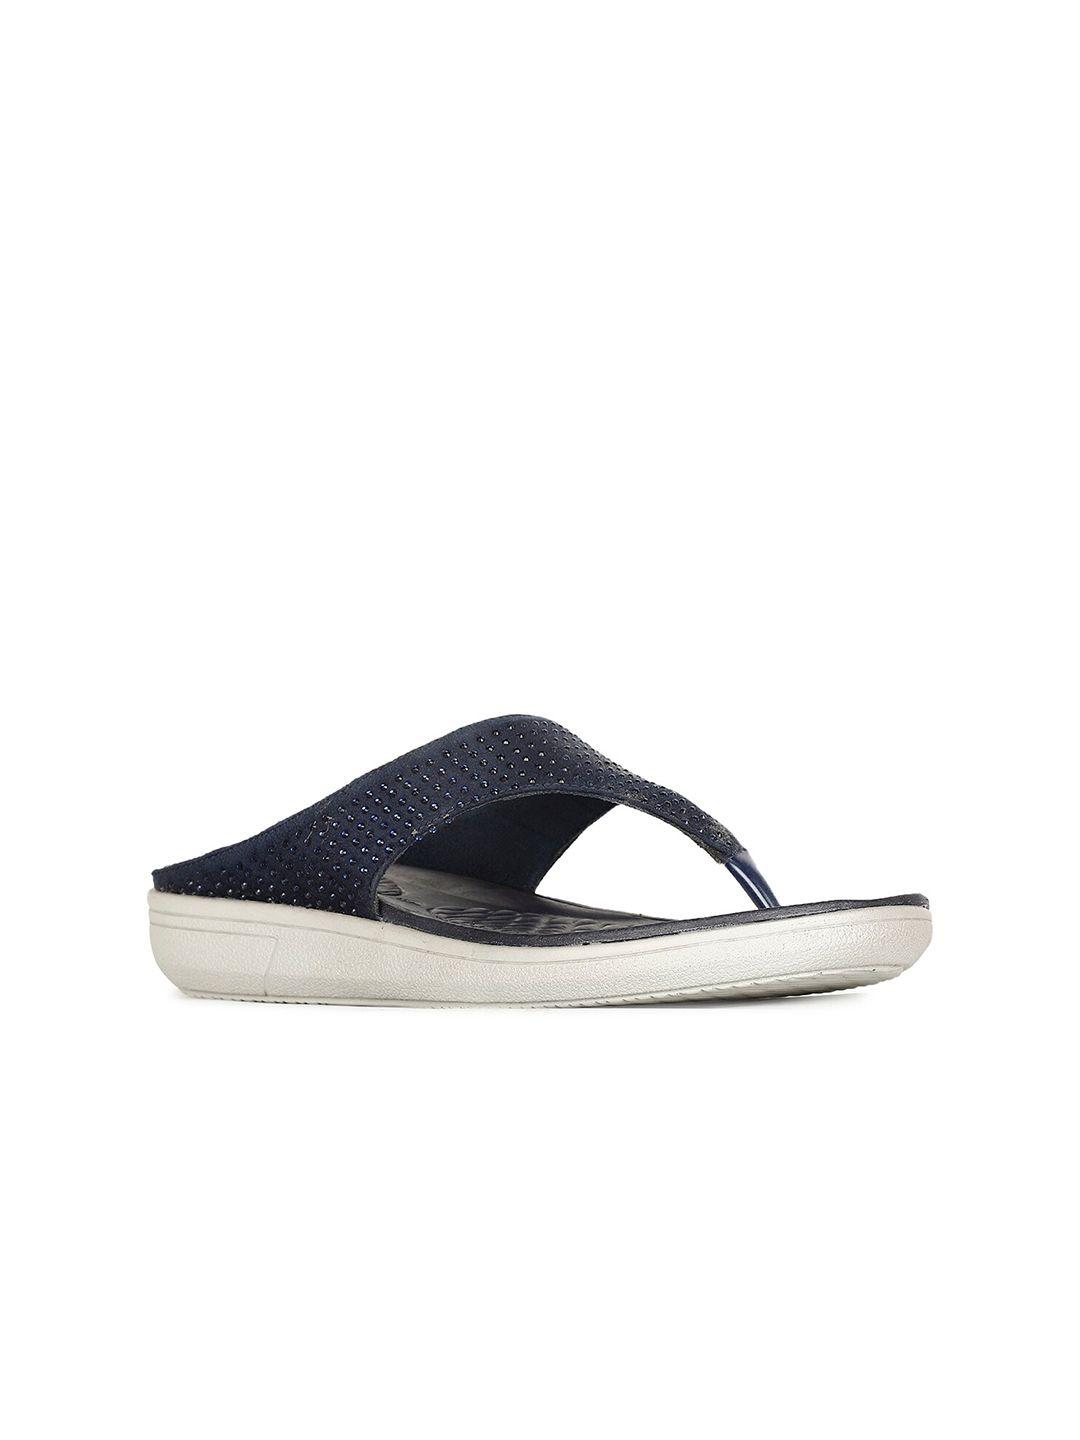 bata-women-navy-blue-pu-comfort-sandals